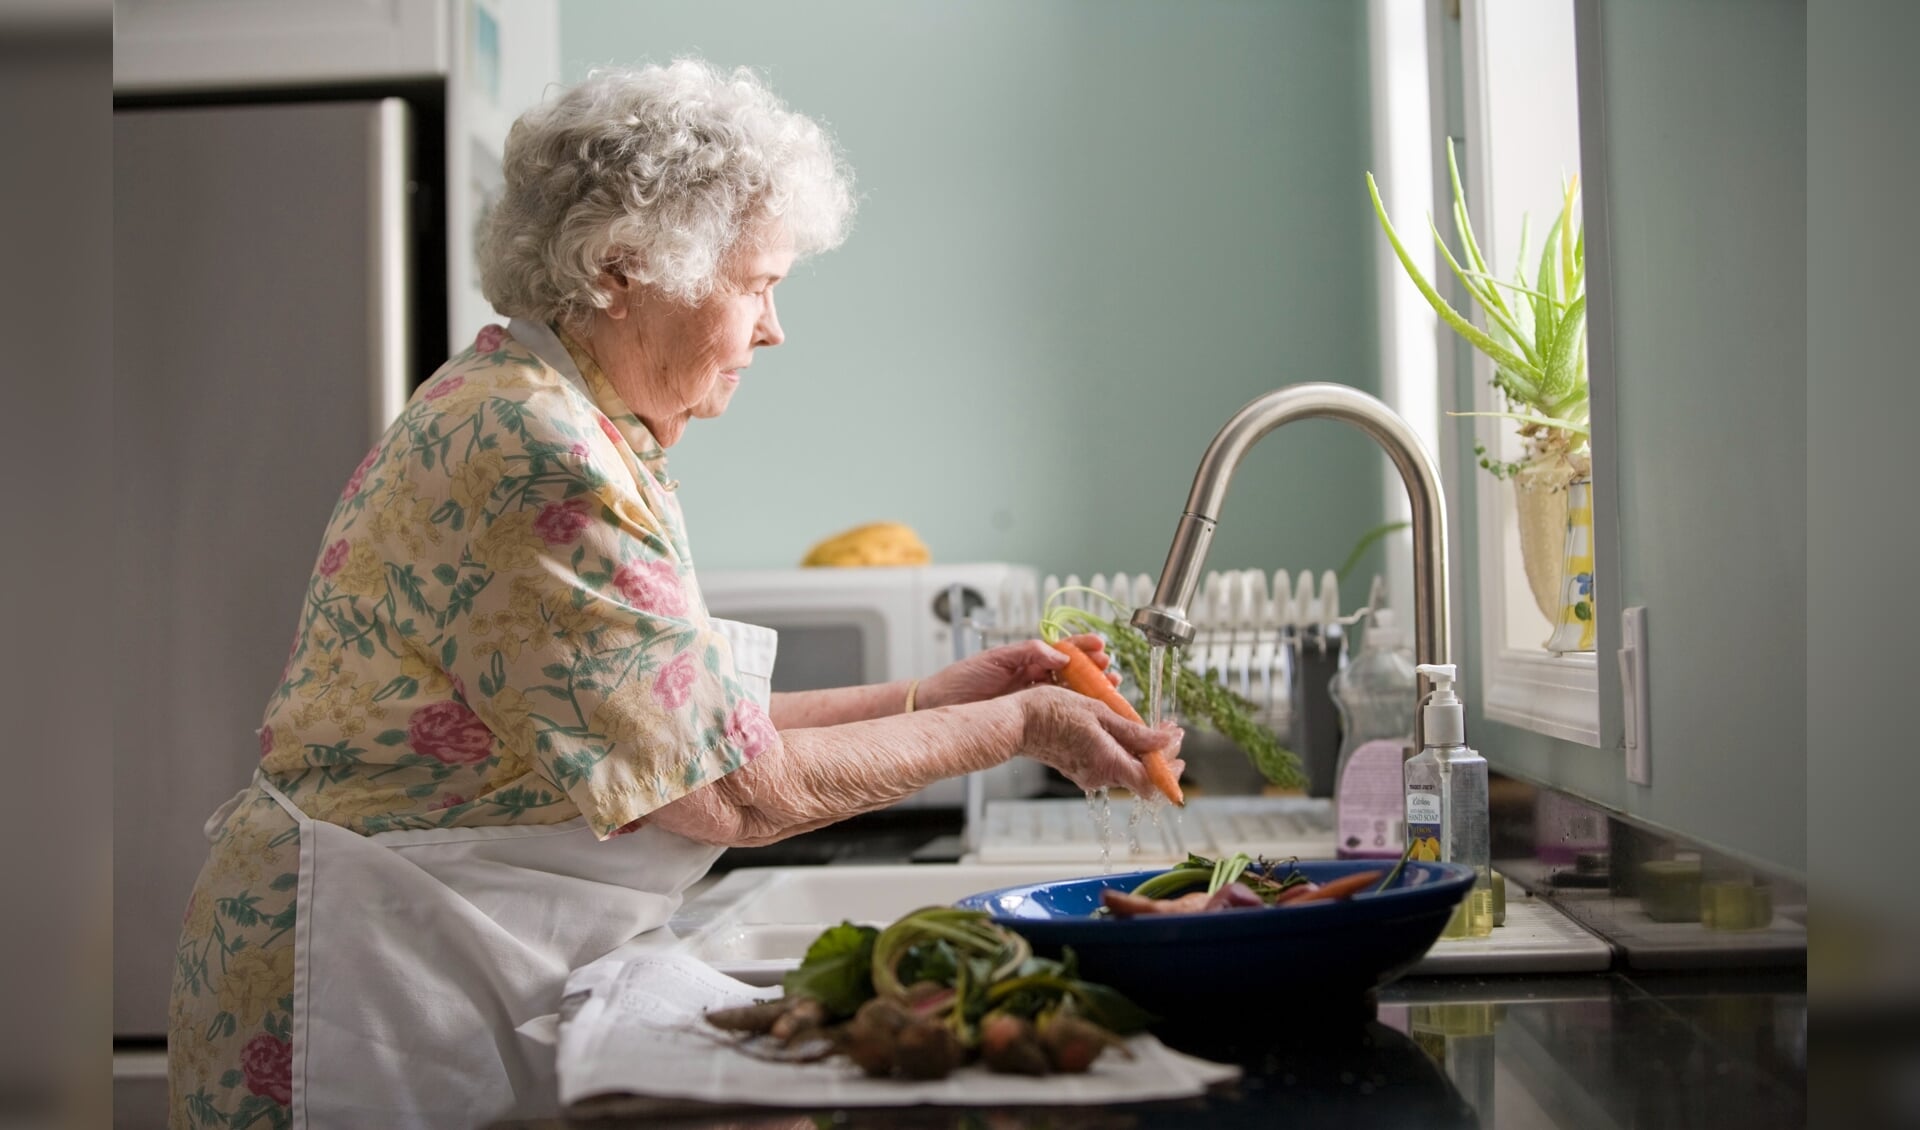 De vergrijzing neemt toe en ouderen blijven langer thuis wonen. Dat betekent passende woningen bouwen waarin het fijn is om ouder te worden.  